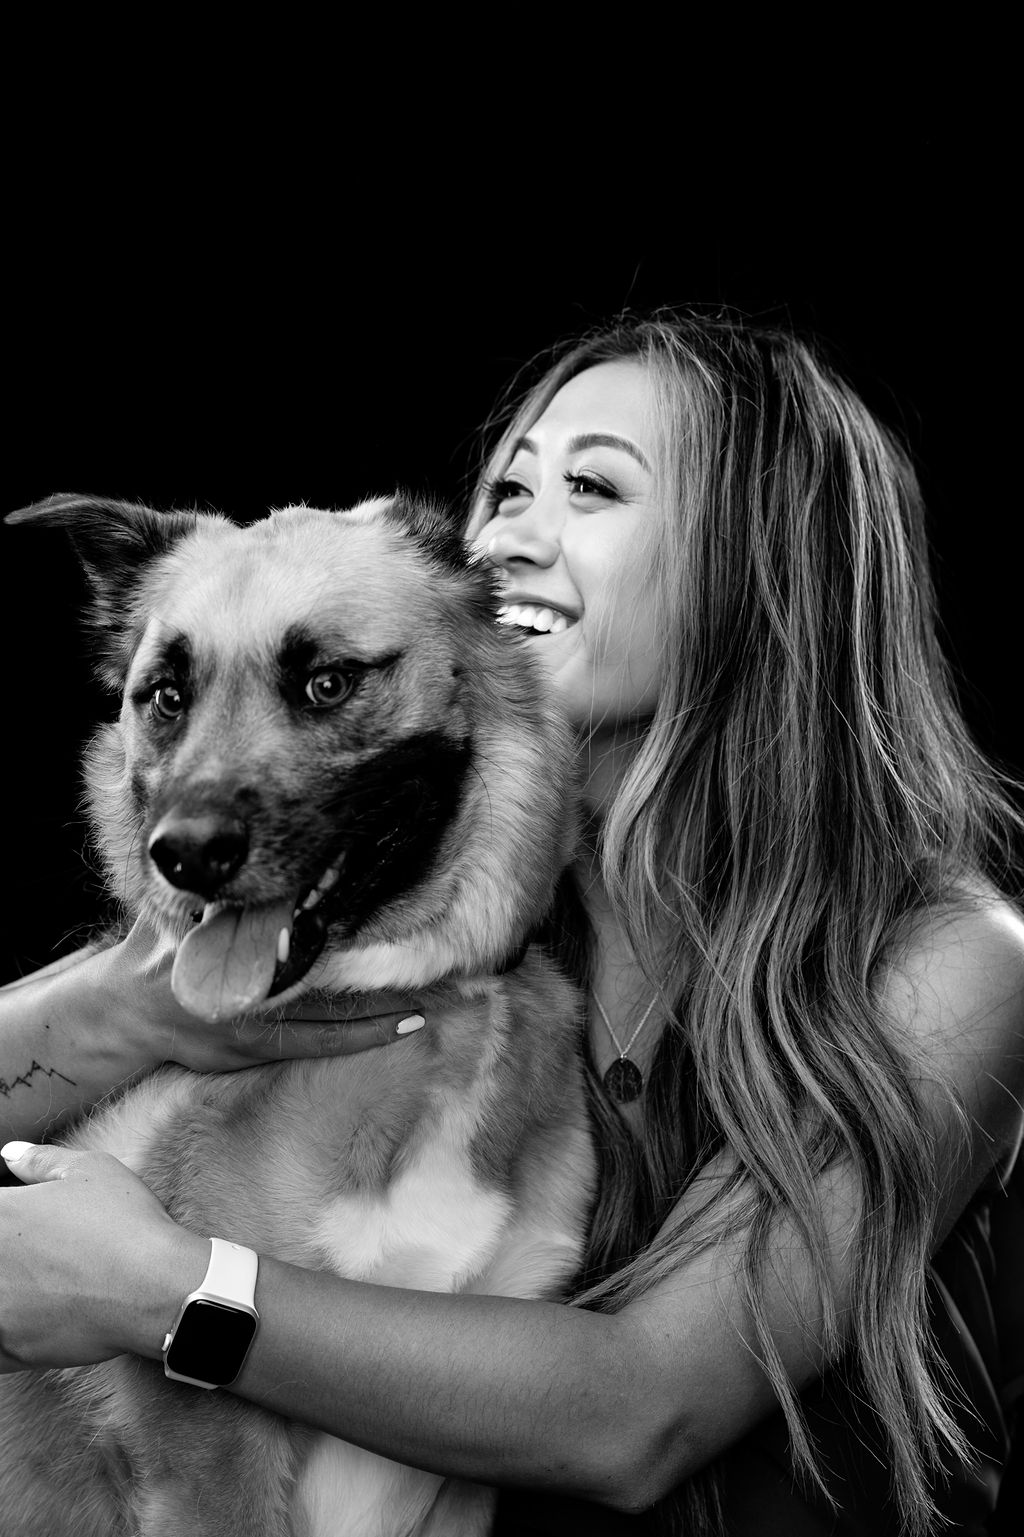 Studio-Fotoshooting mit Hund in Mülheim an der Ruhr. Das Bild ist schwarz-weiß und zeigt Joey und seine Besitzerin lächelnd.